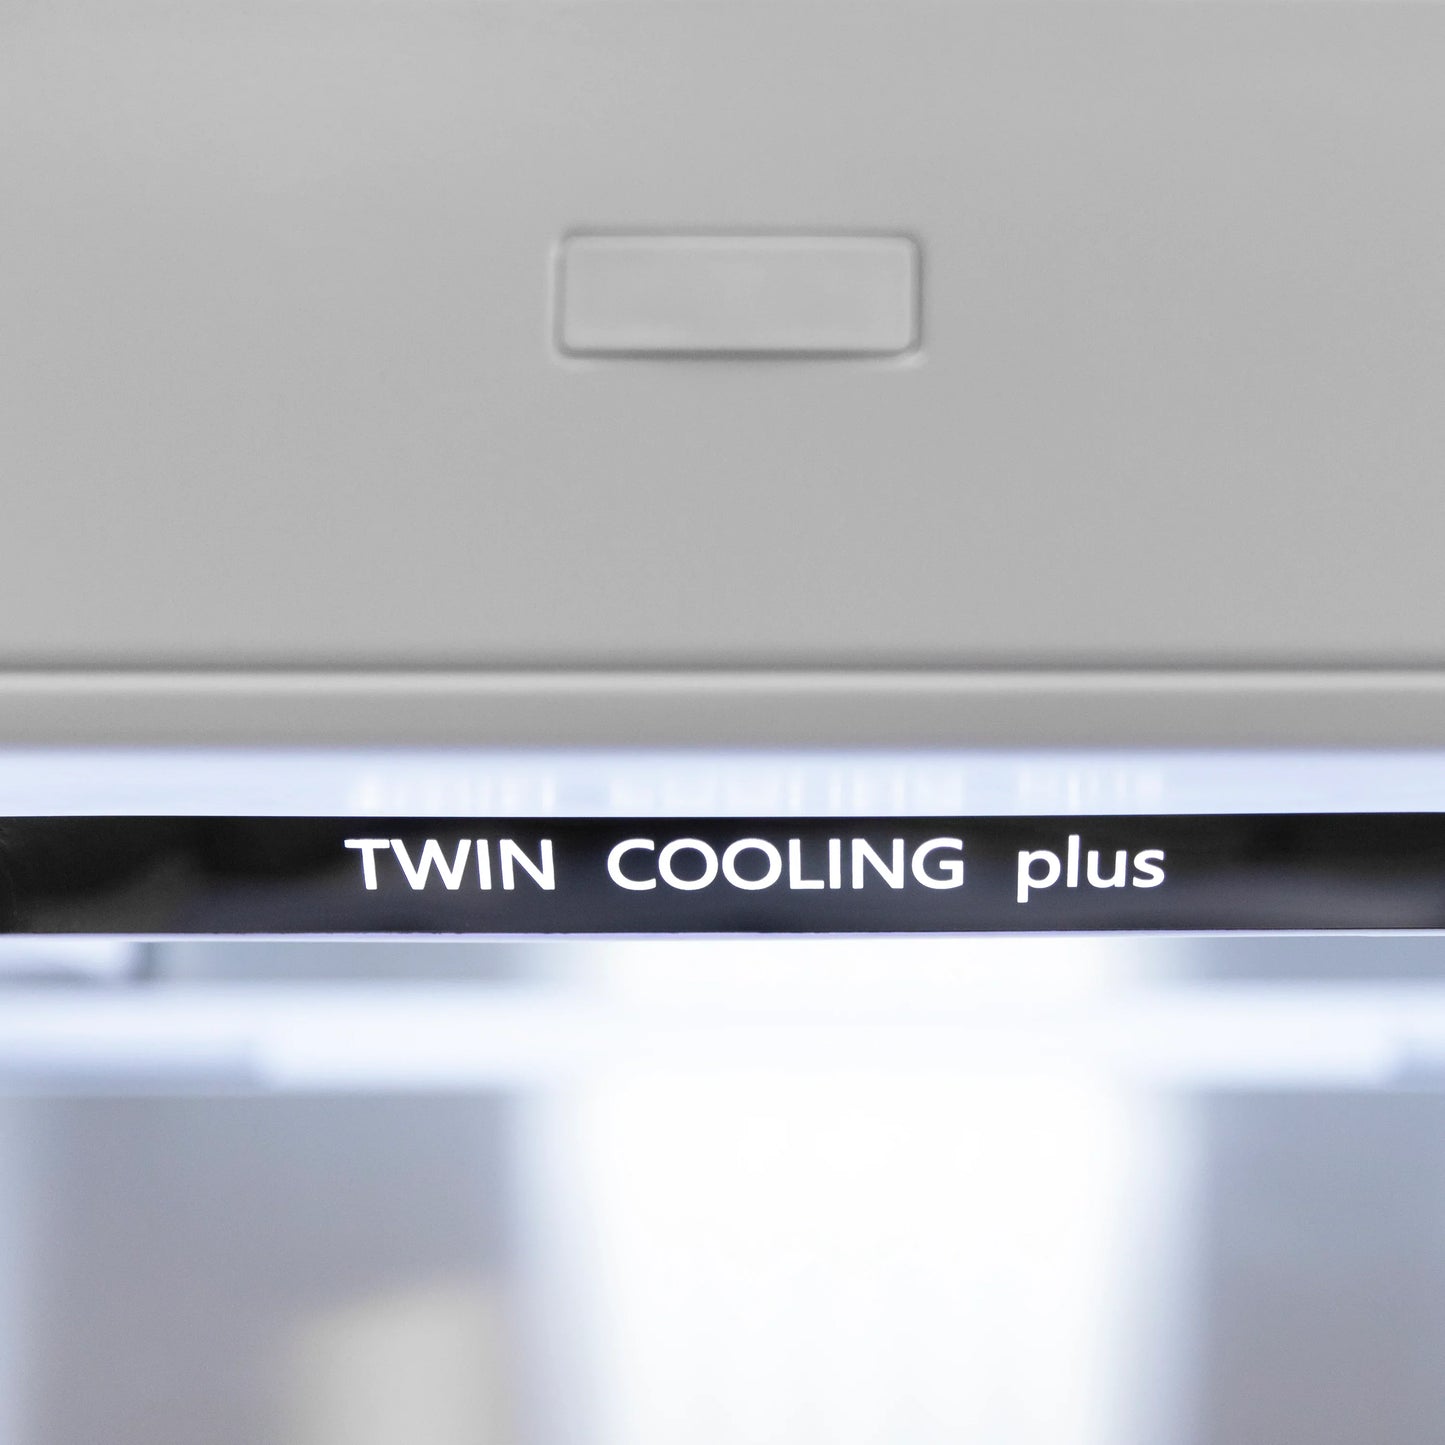 ZLINE 60 In. 32.2 cu. Ft. Panel Ready Built-In 4-Door French Door Refrigerator with Gold Handles, RBIV-60-G